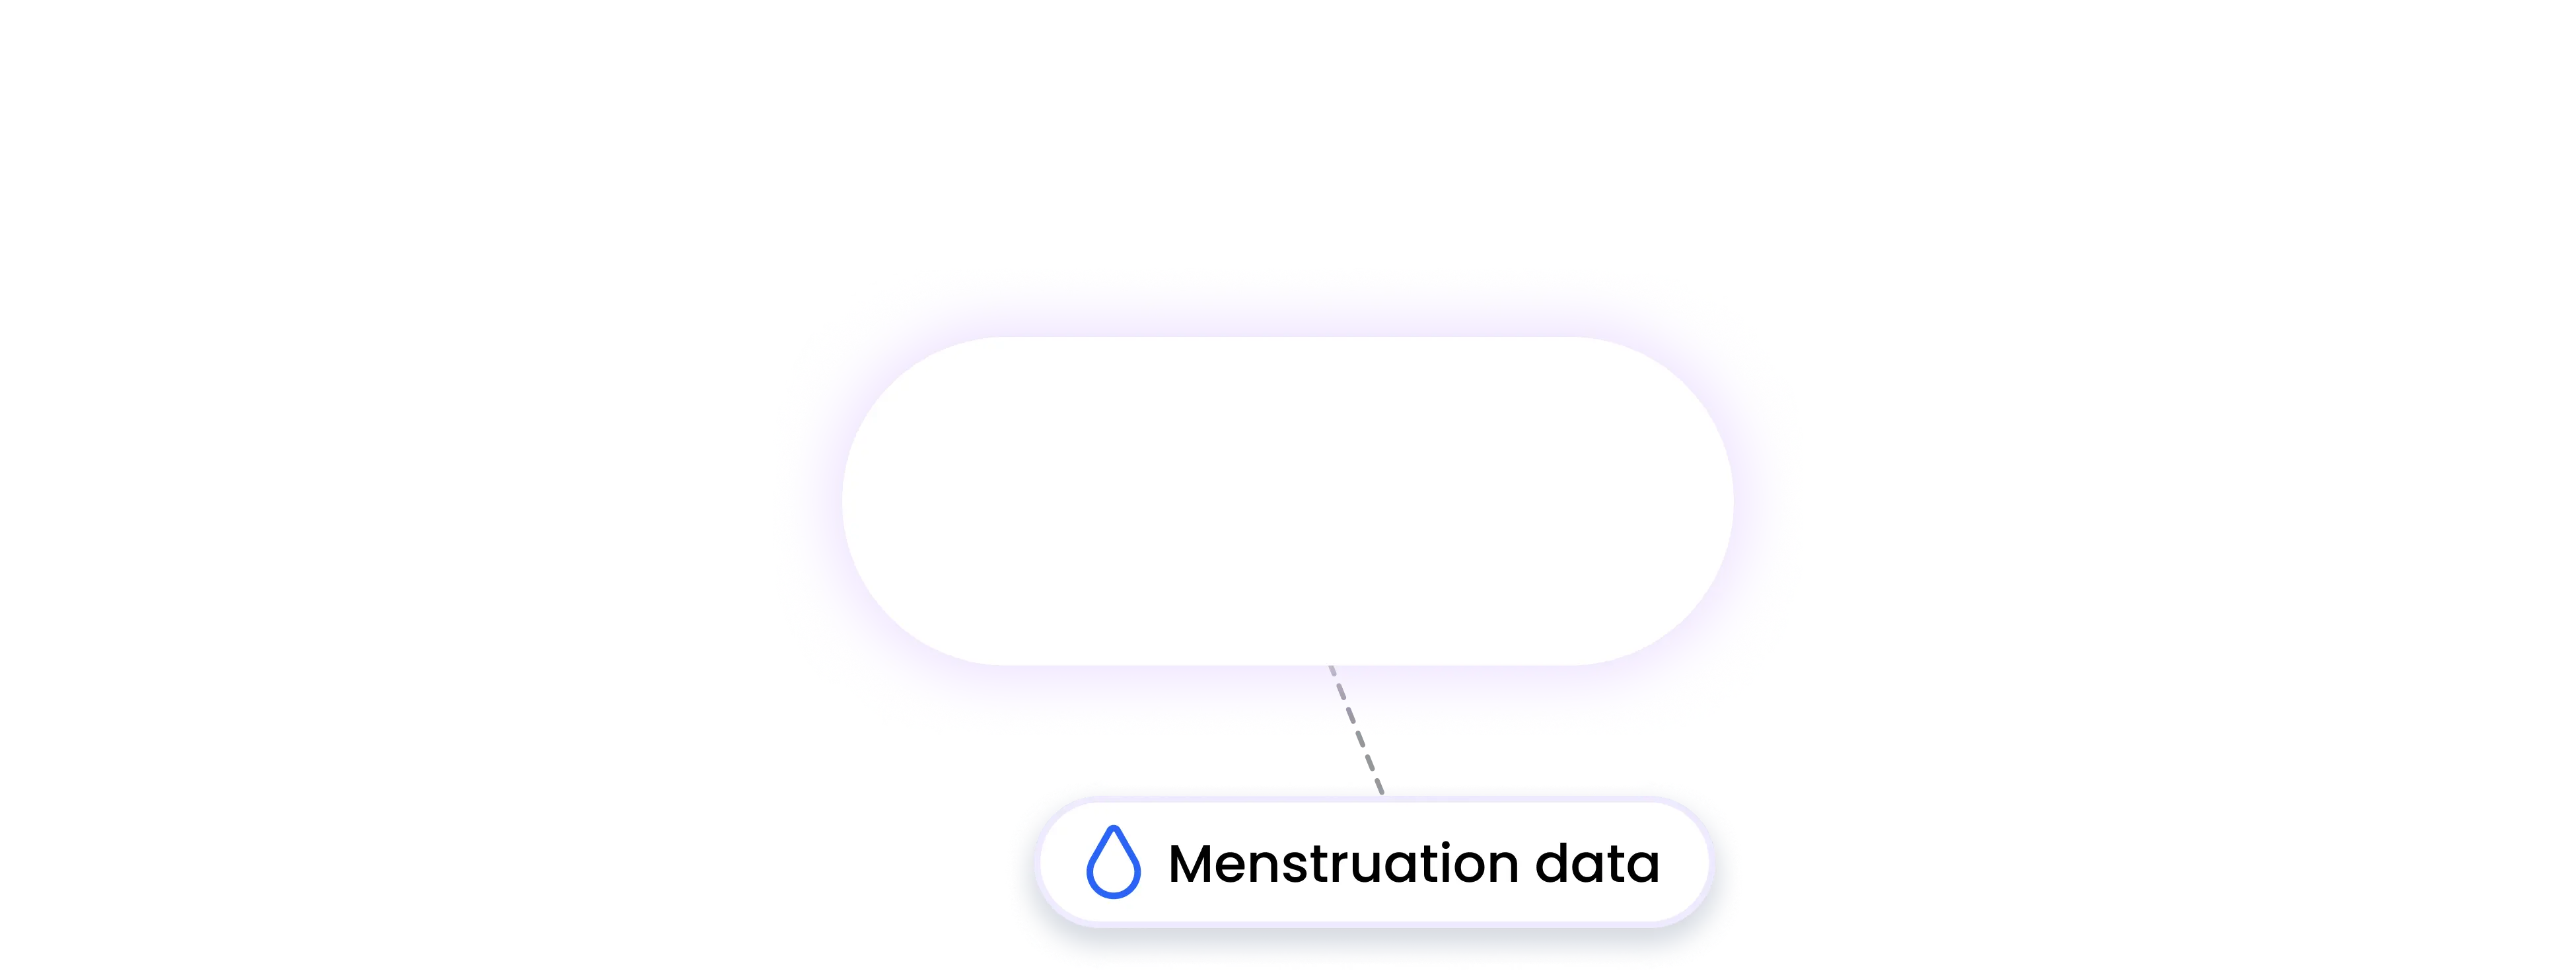 concept2 integration MENSTRUATION data